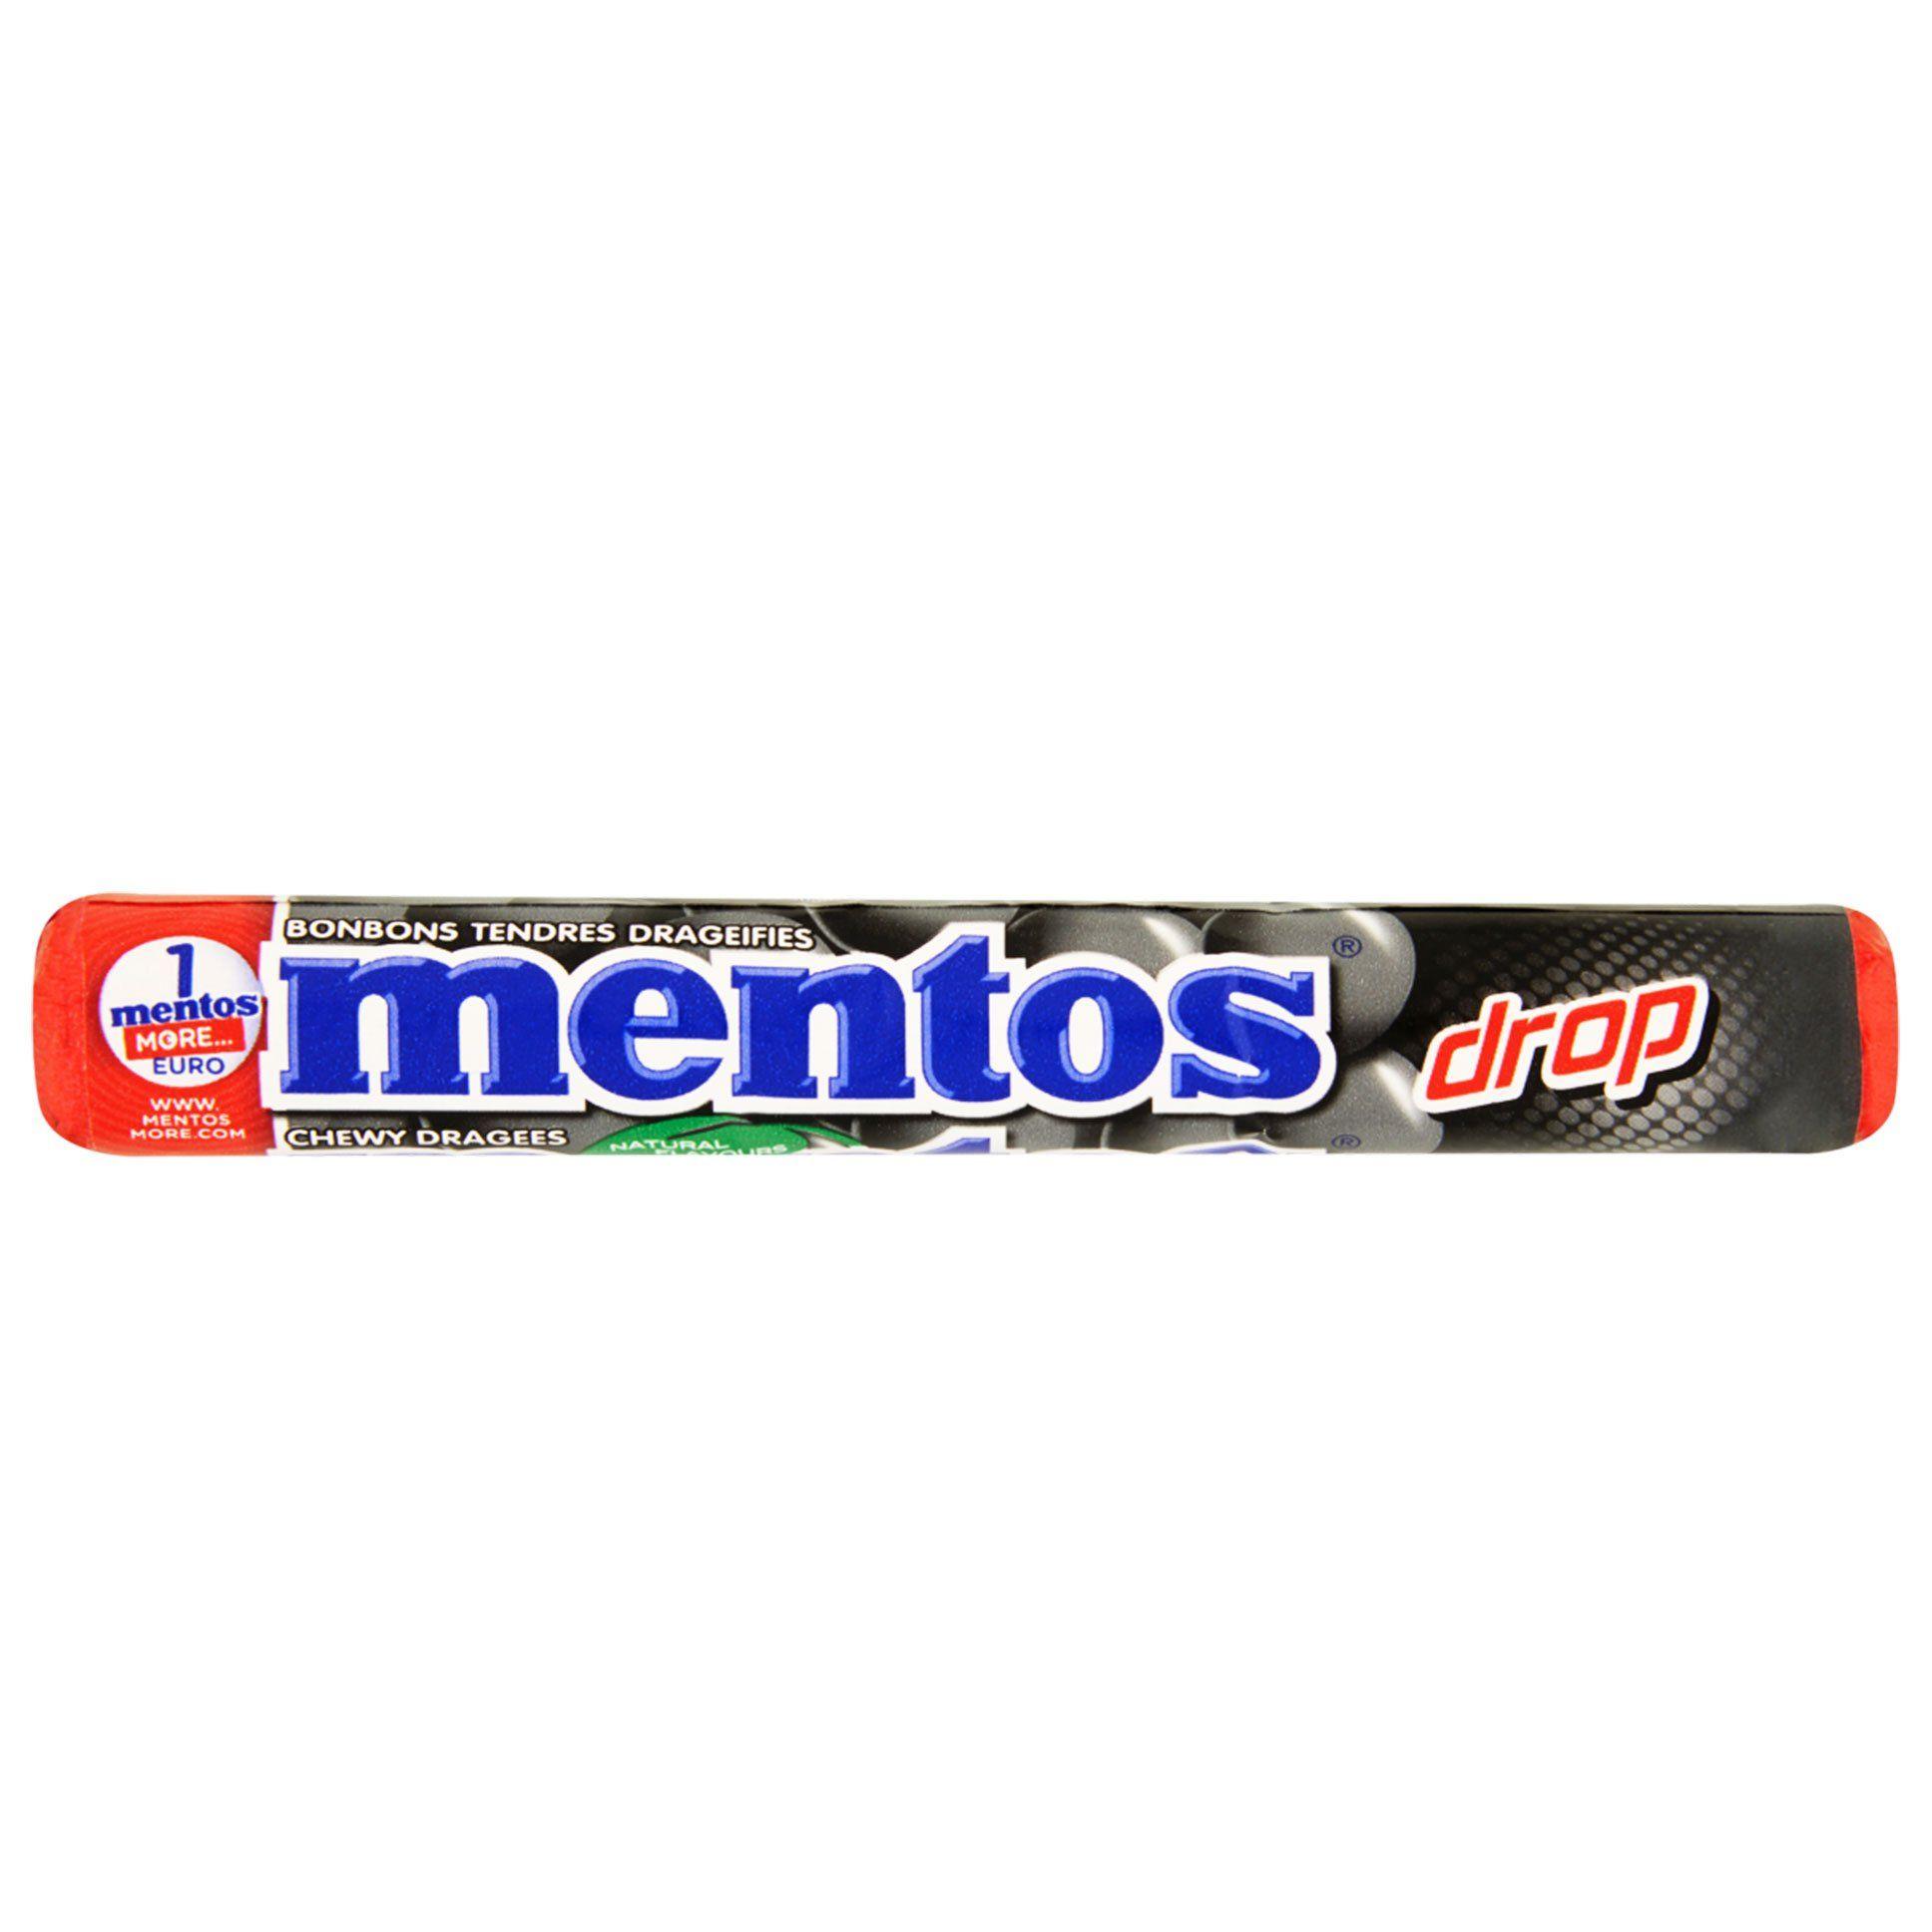 Mentos Logo - Mentos(Licorice Flavor), 1.32 oz